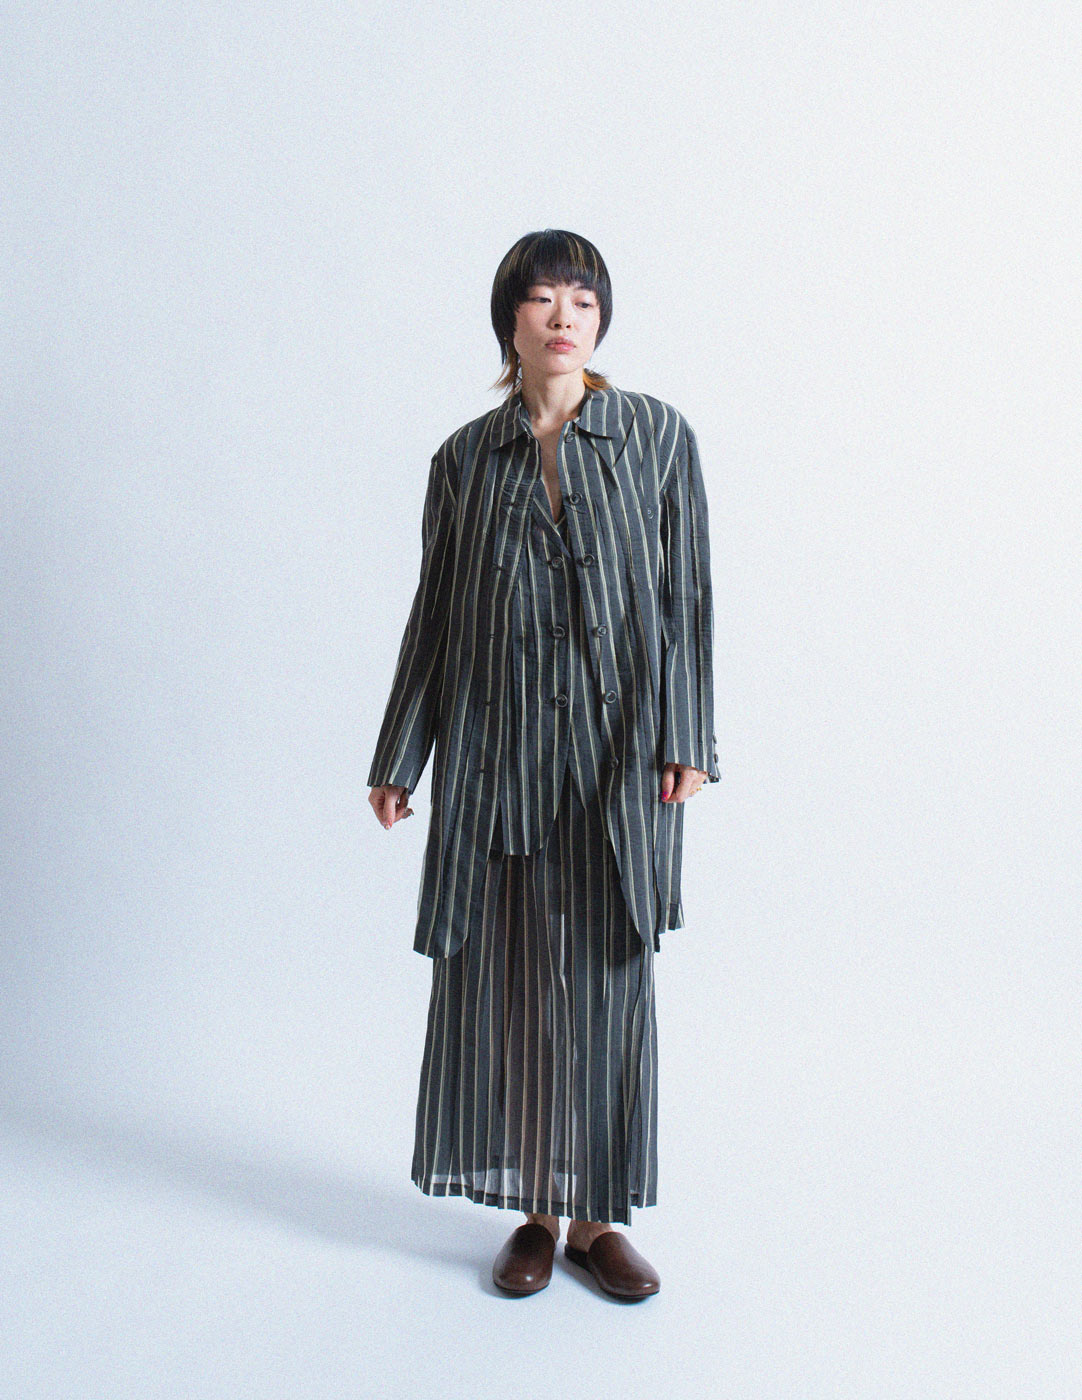 Issey Miyake vintage sheer striped shirt jacket